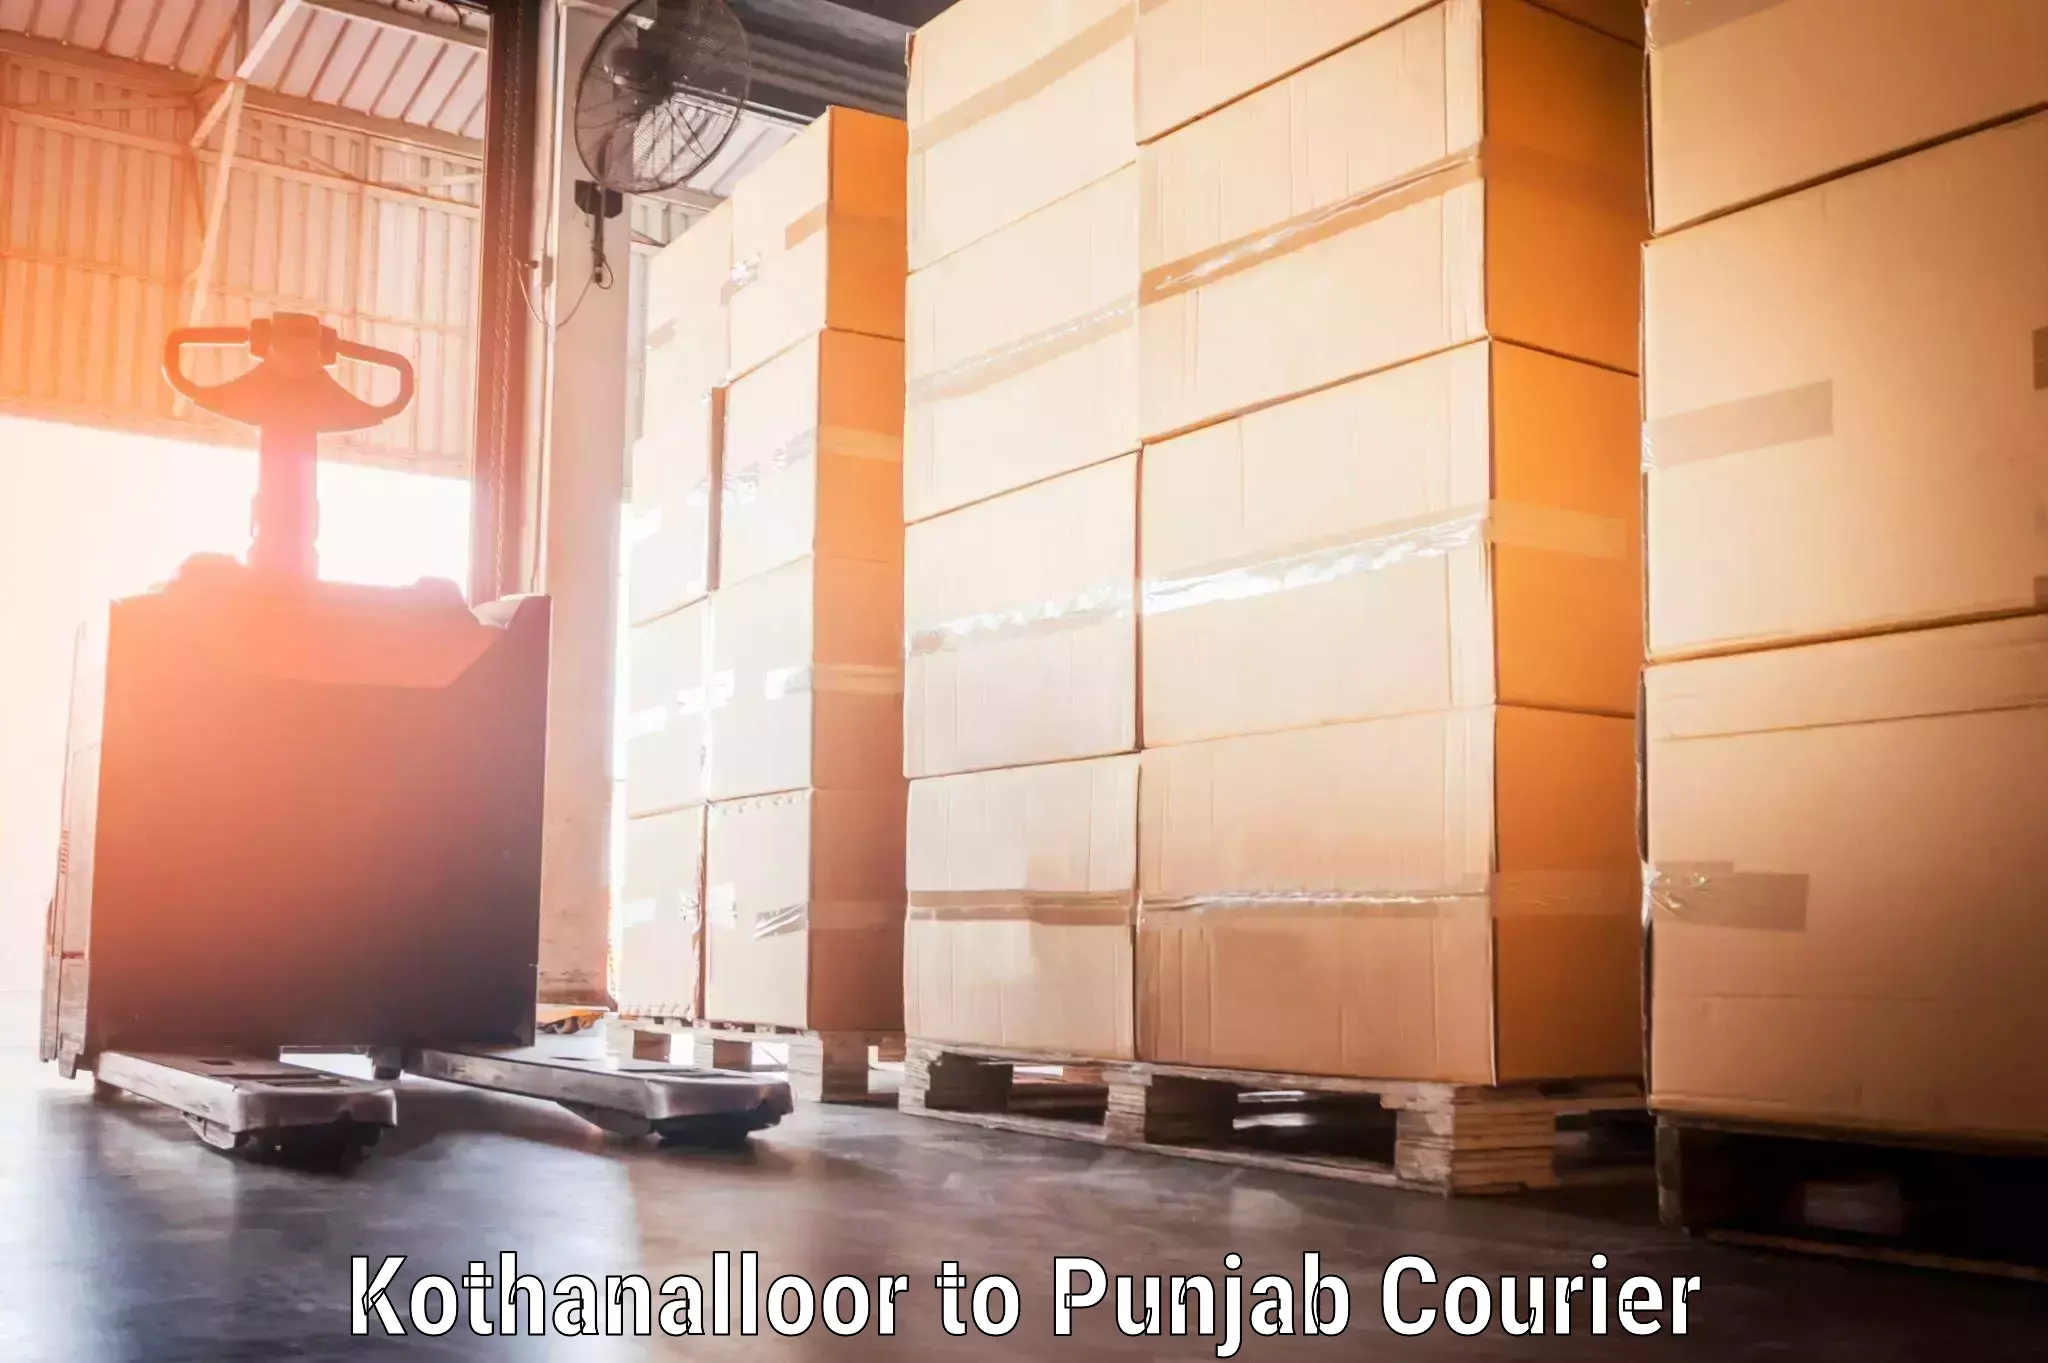 Baggage shipping optimization Kothanalloor to Pathankot